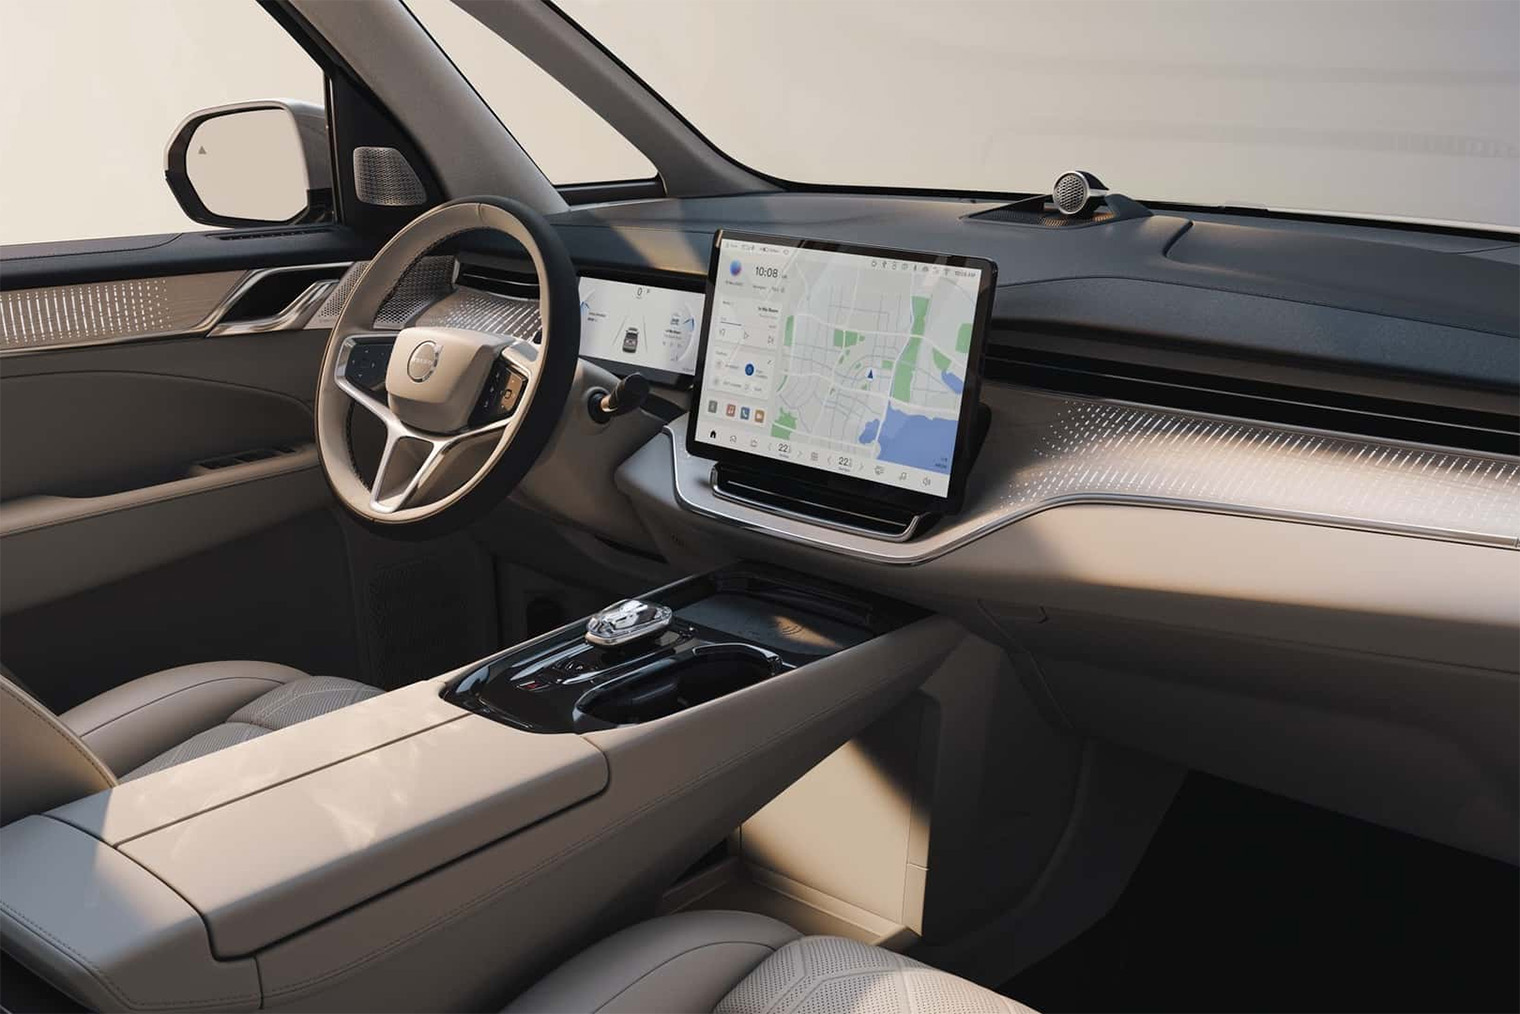 Характерные черты Volvo в салоне — руль и измененный интерфейс бортового компьютера. Источник: Volvo